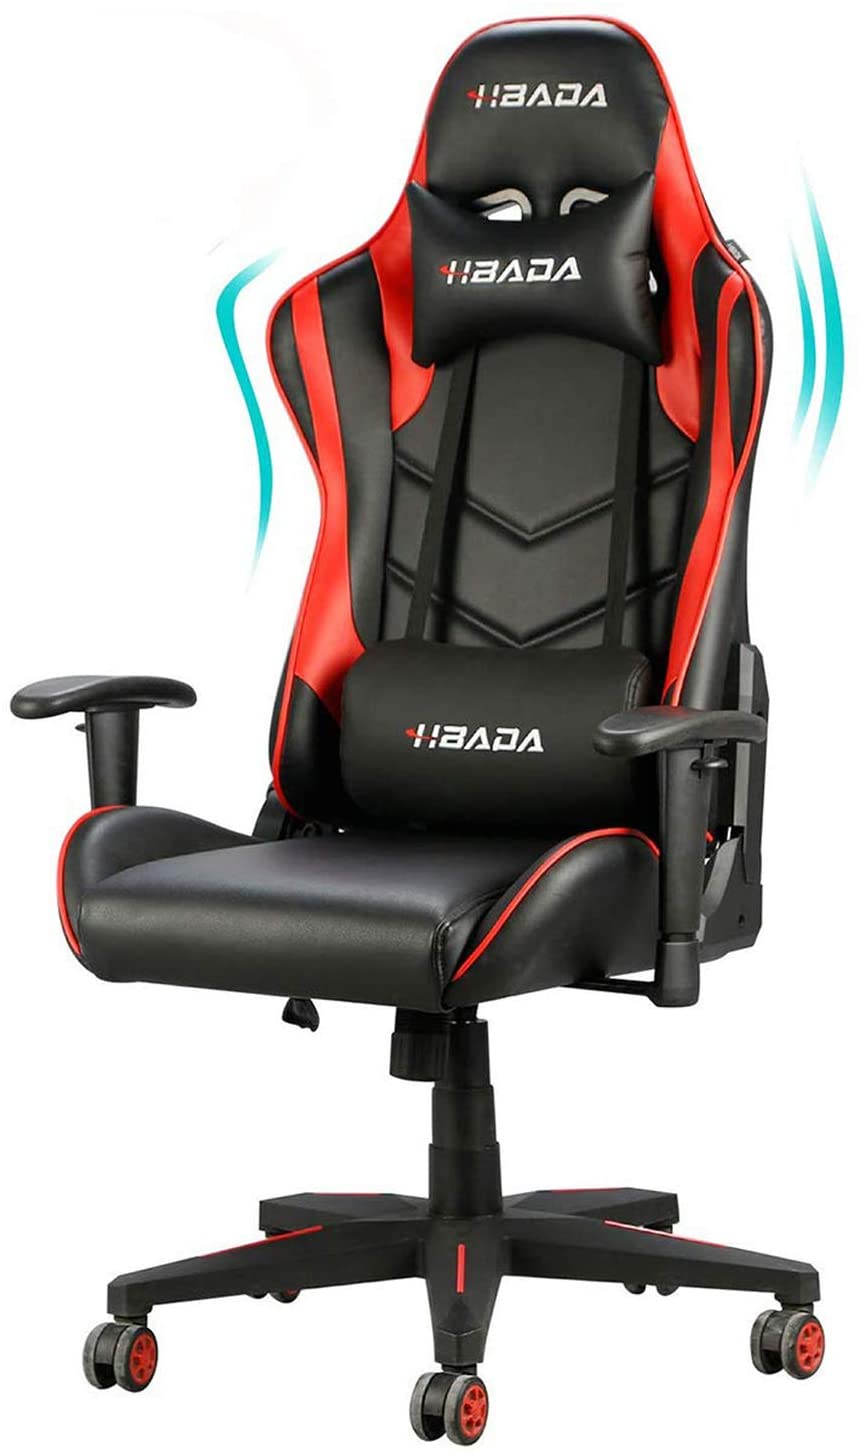 Hbada Ergonomic Gaming Chair